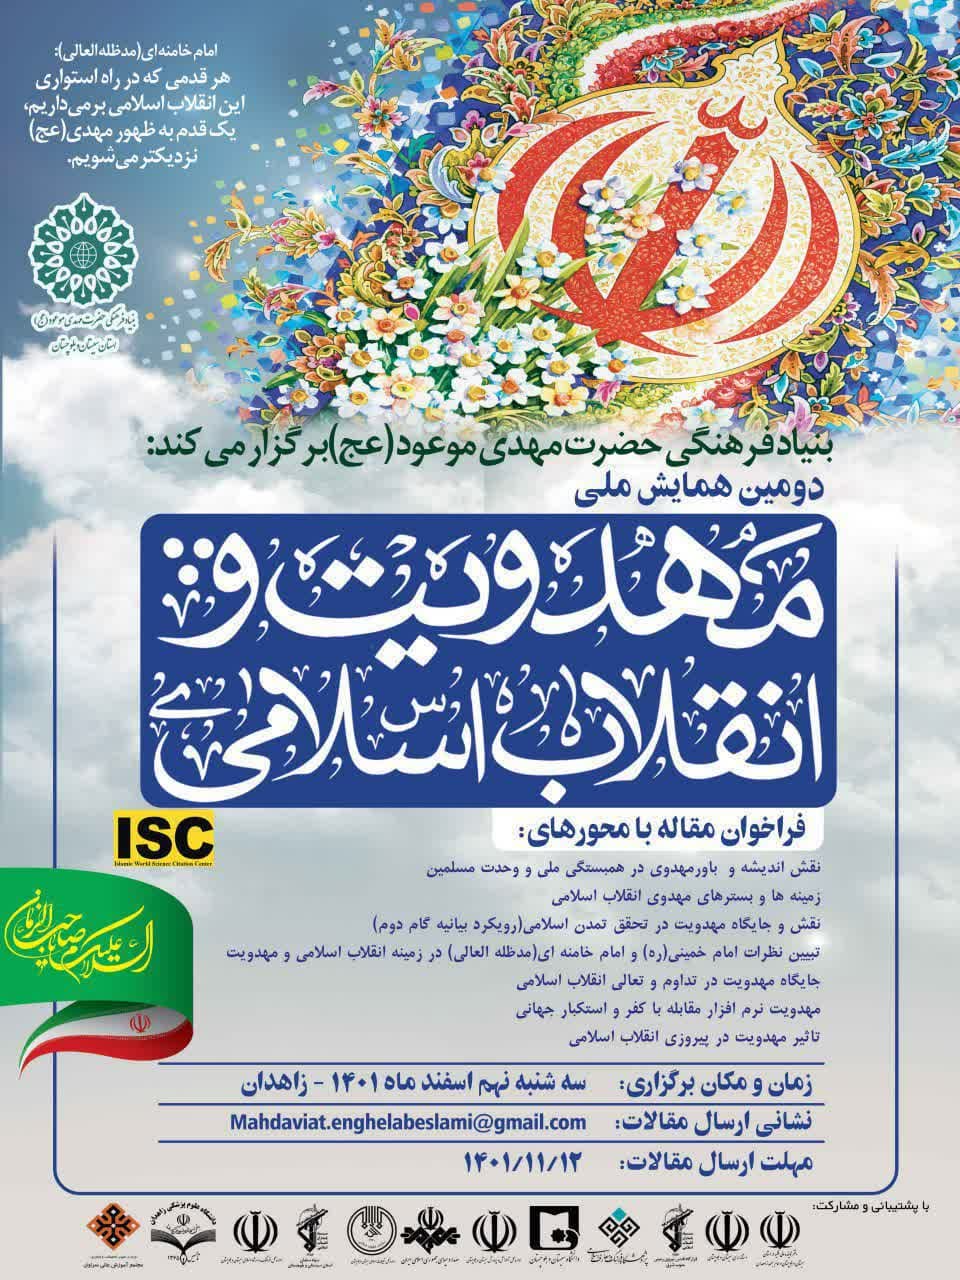 دومین همایش ملی مهدویت و انقلاب اسلامی برگزار می شود